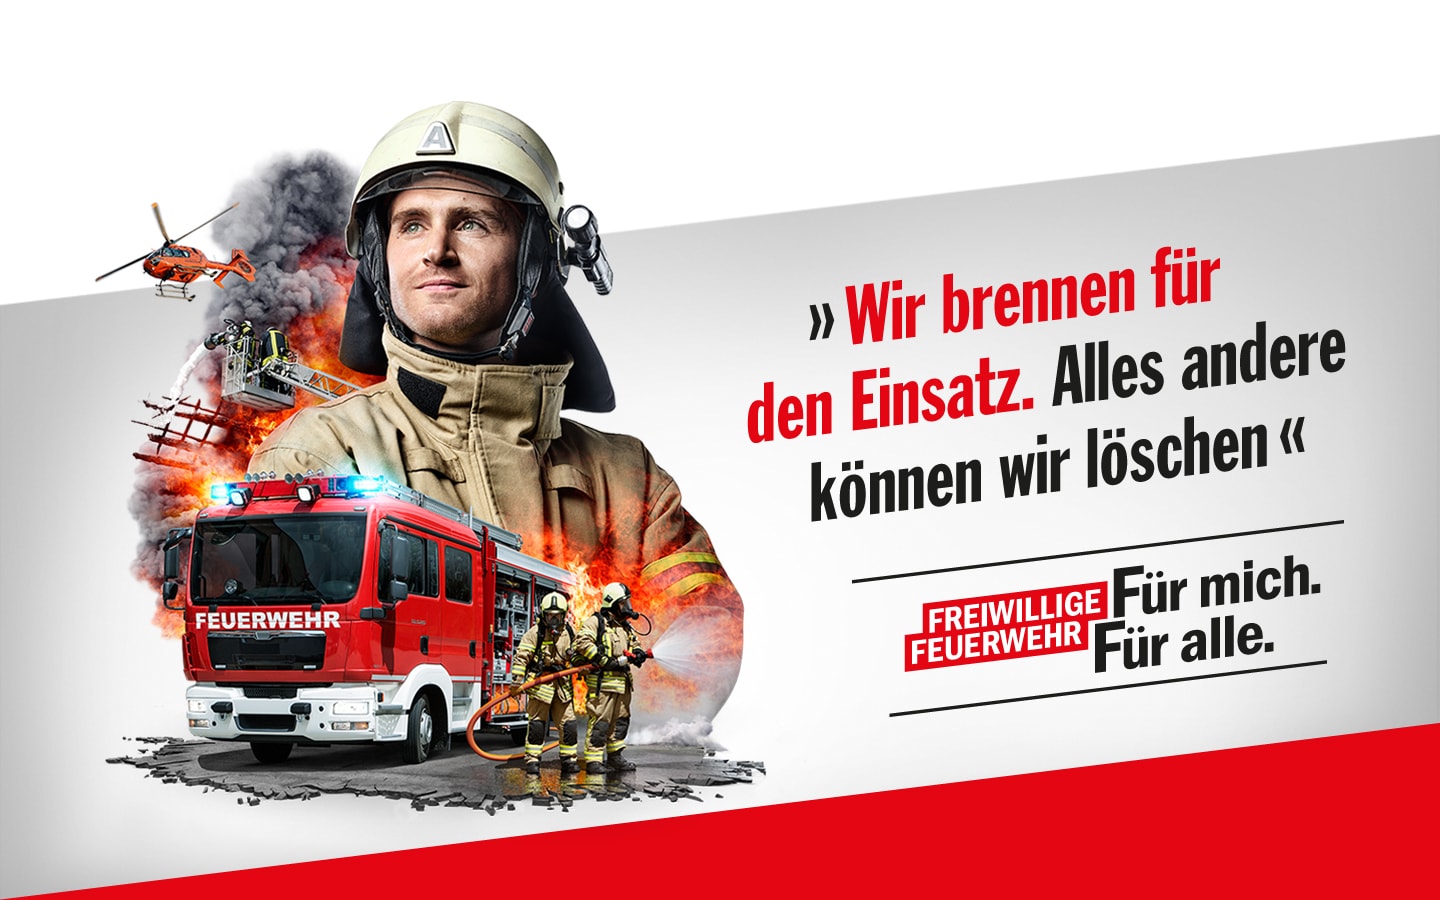 Werbekampagne zur Mitgliedergewinnung für die Freiwillige Feuerwehr NRW. Für mich. Für alle. "Wir brennen für den Einsatz, alles andere können wir löschen."